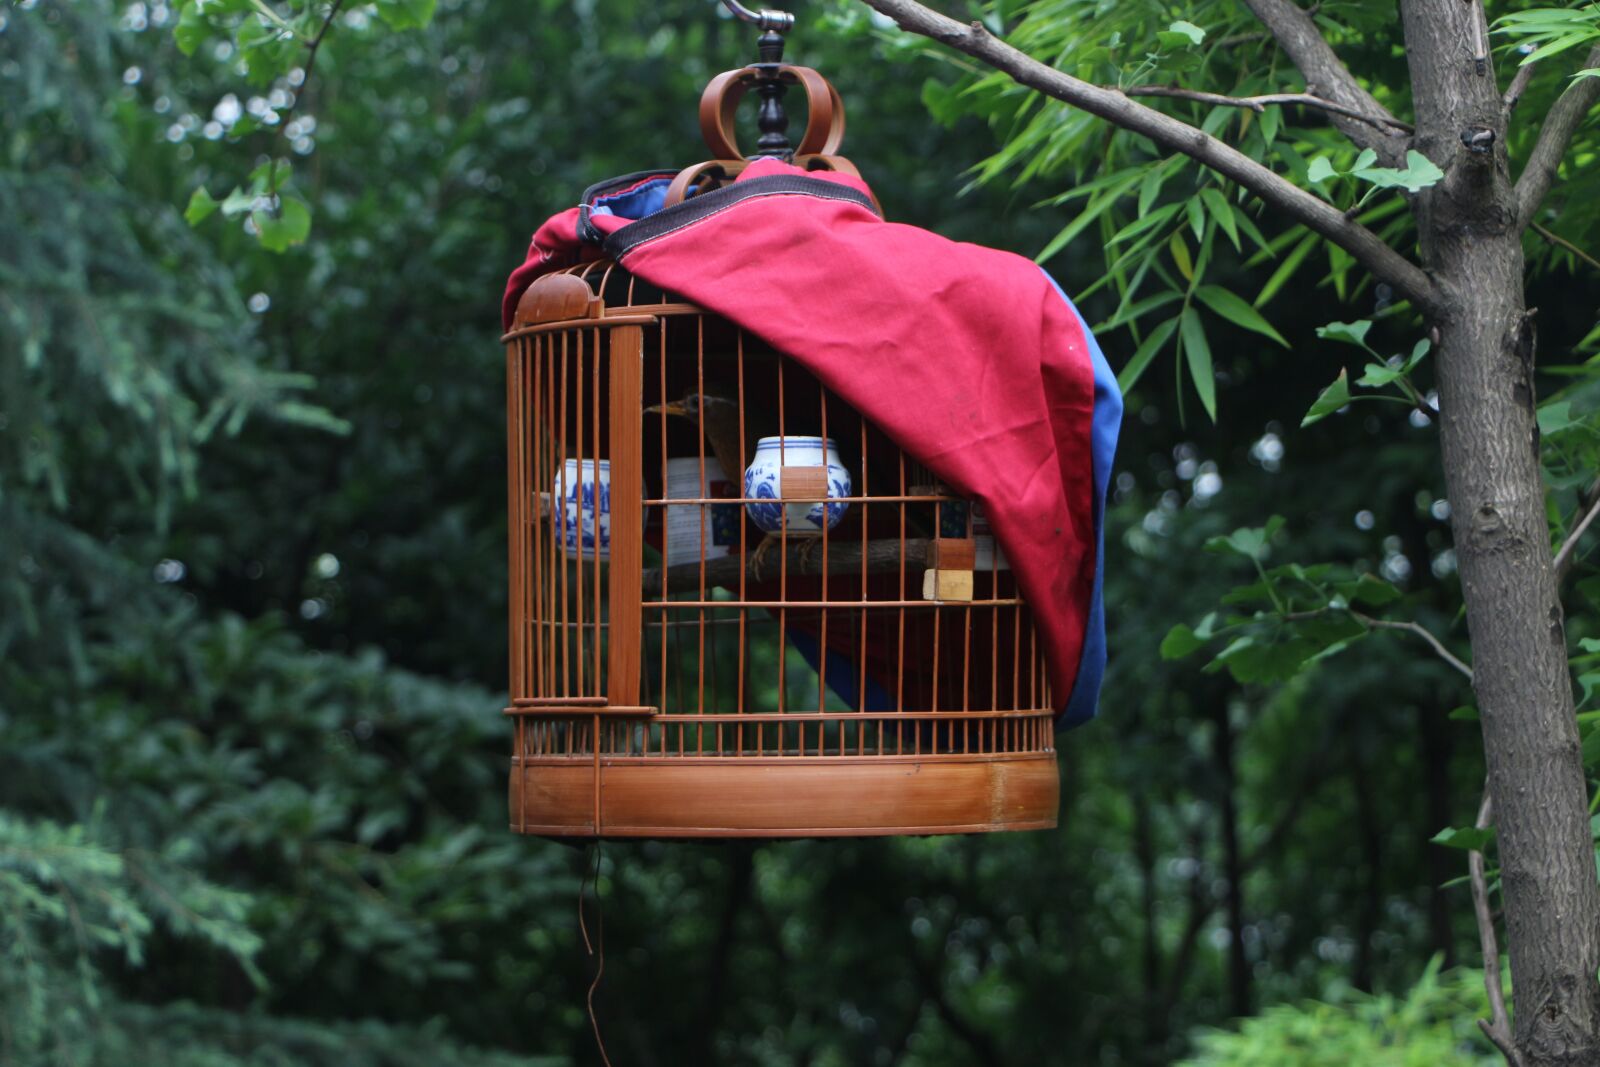 Canon EOS 700D (EOS Rebel T5i / EOS Kiss X7i) sample photo. Birdcage, bird, cage photography